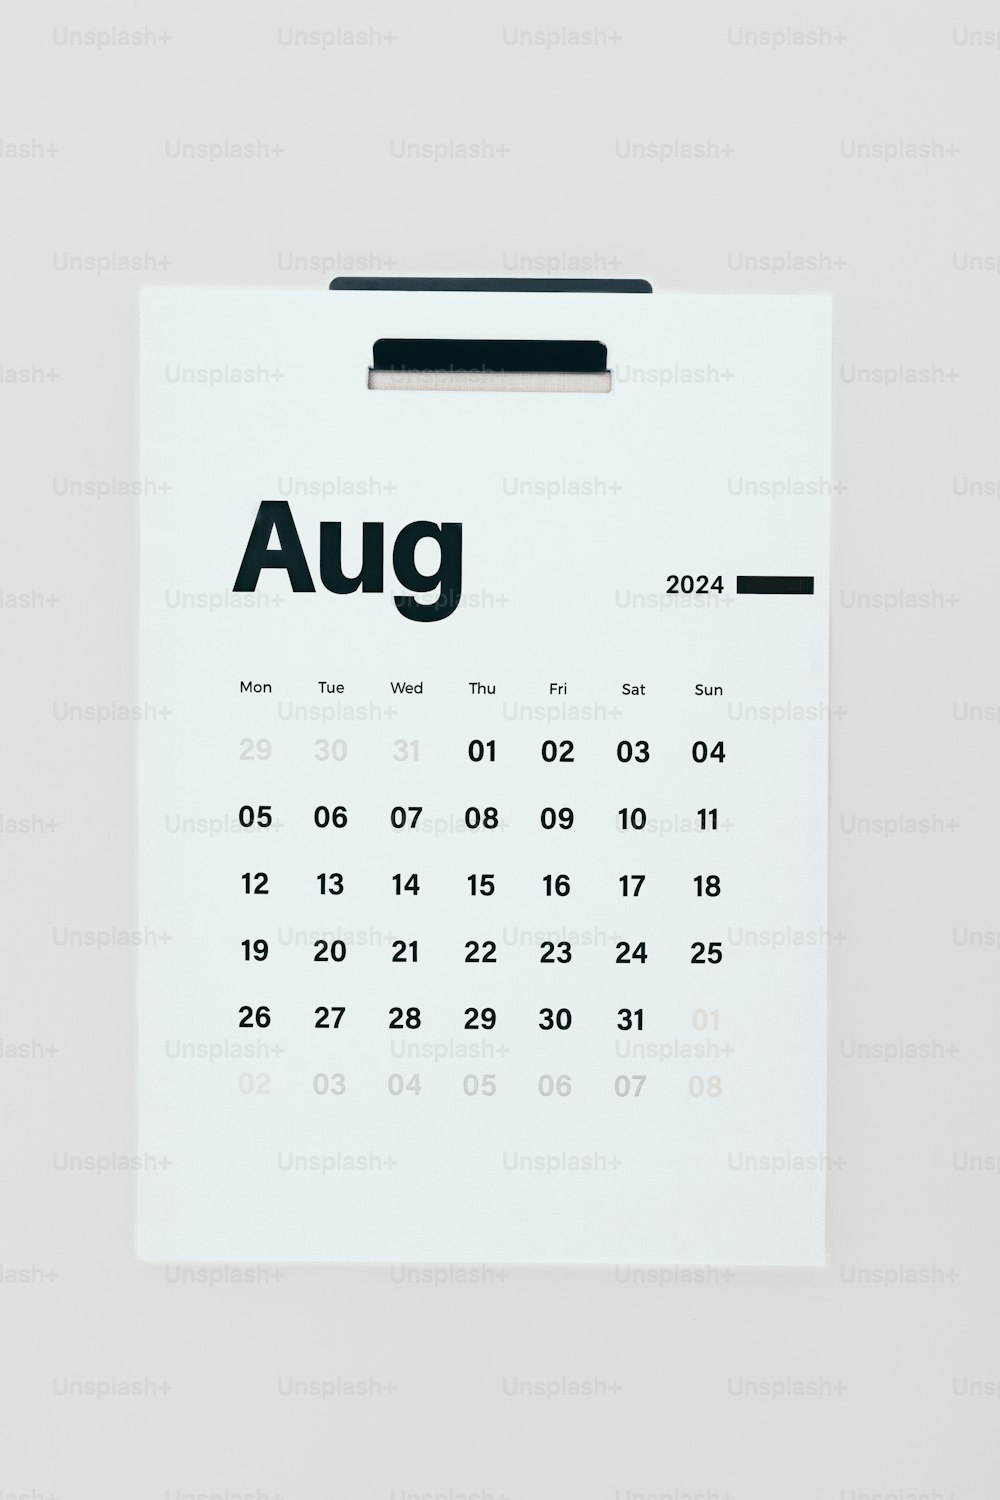 「8月」と書かれたカレンダー